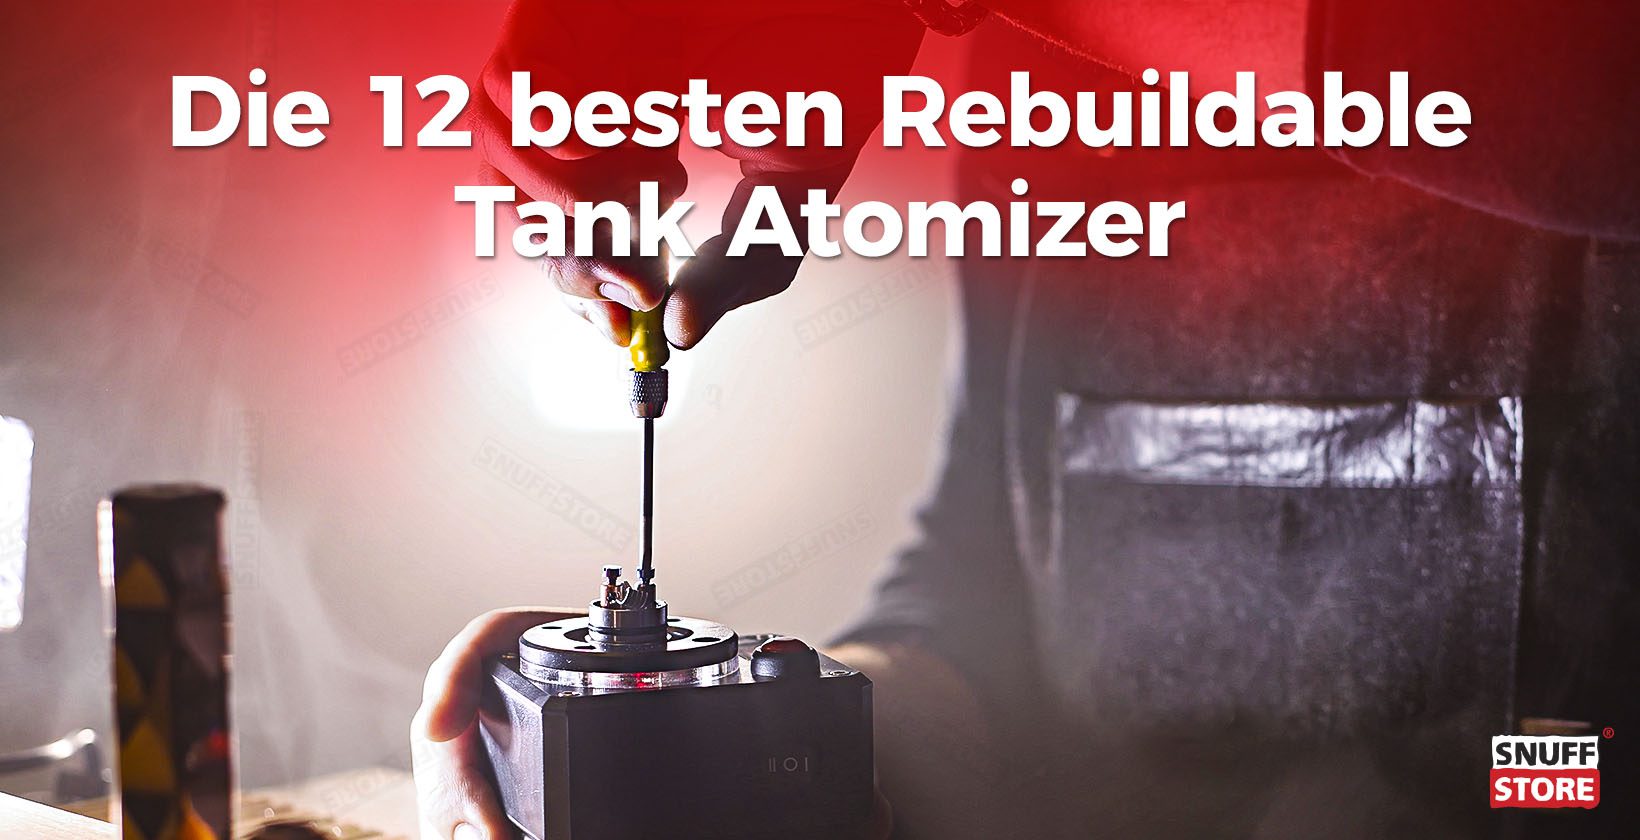 Die besten rebuildable Tank Atomizer